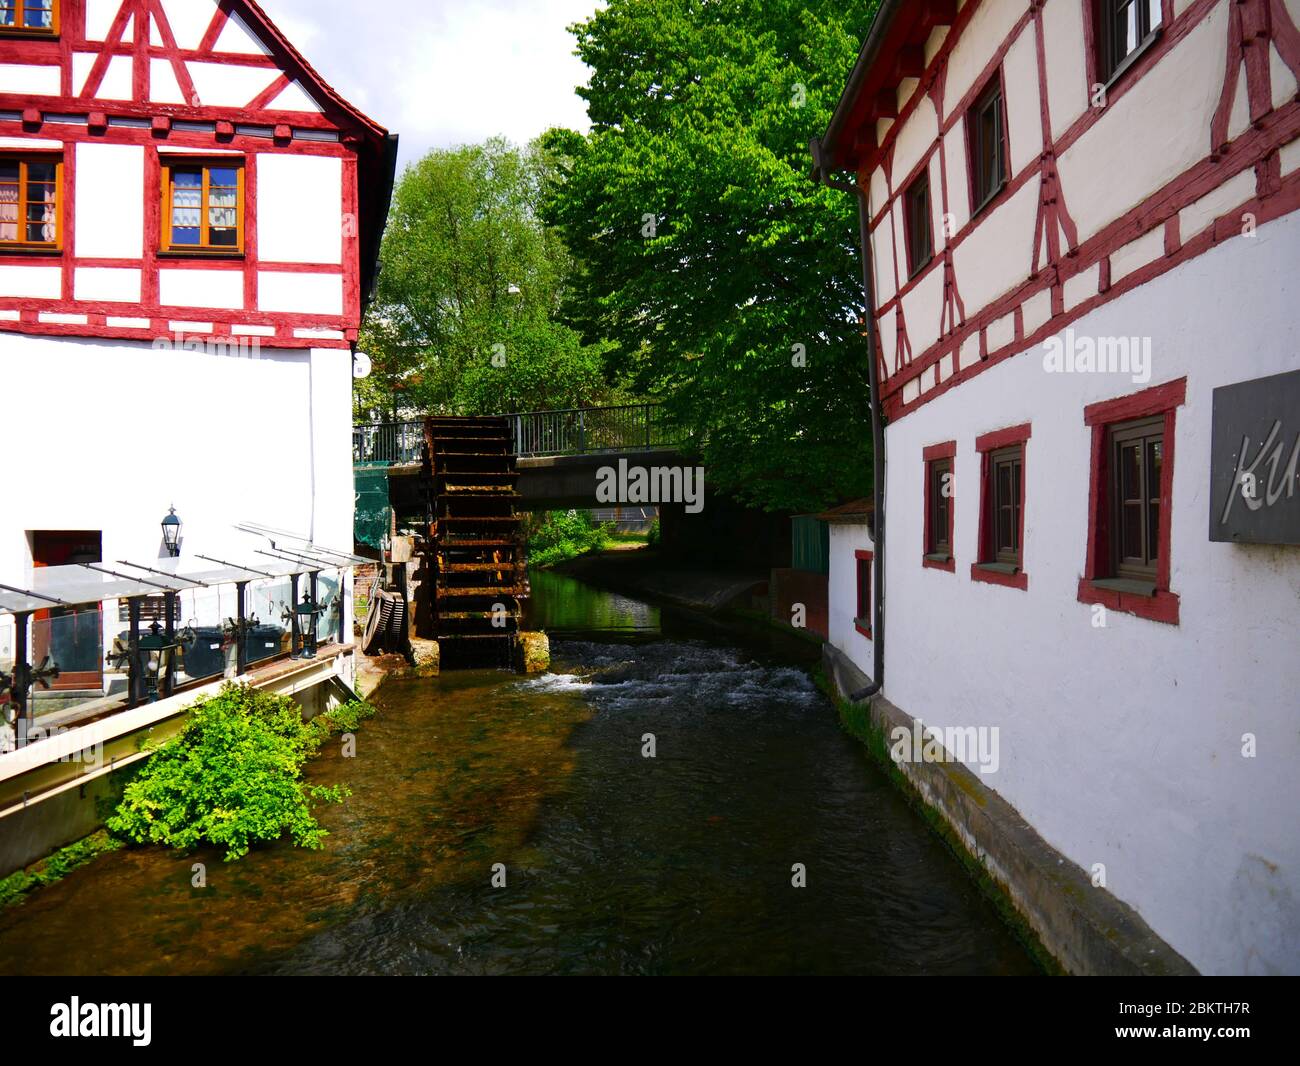 Ulm, Germania: Un mulino nel quartiere dei pescatori Foto Stock